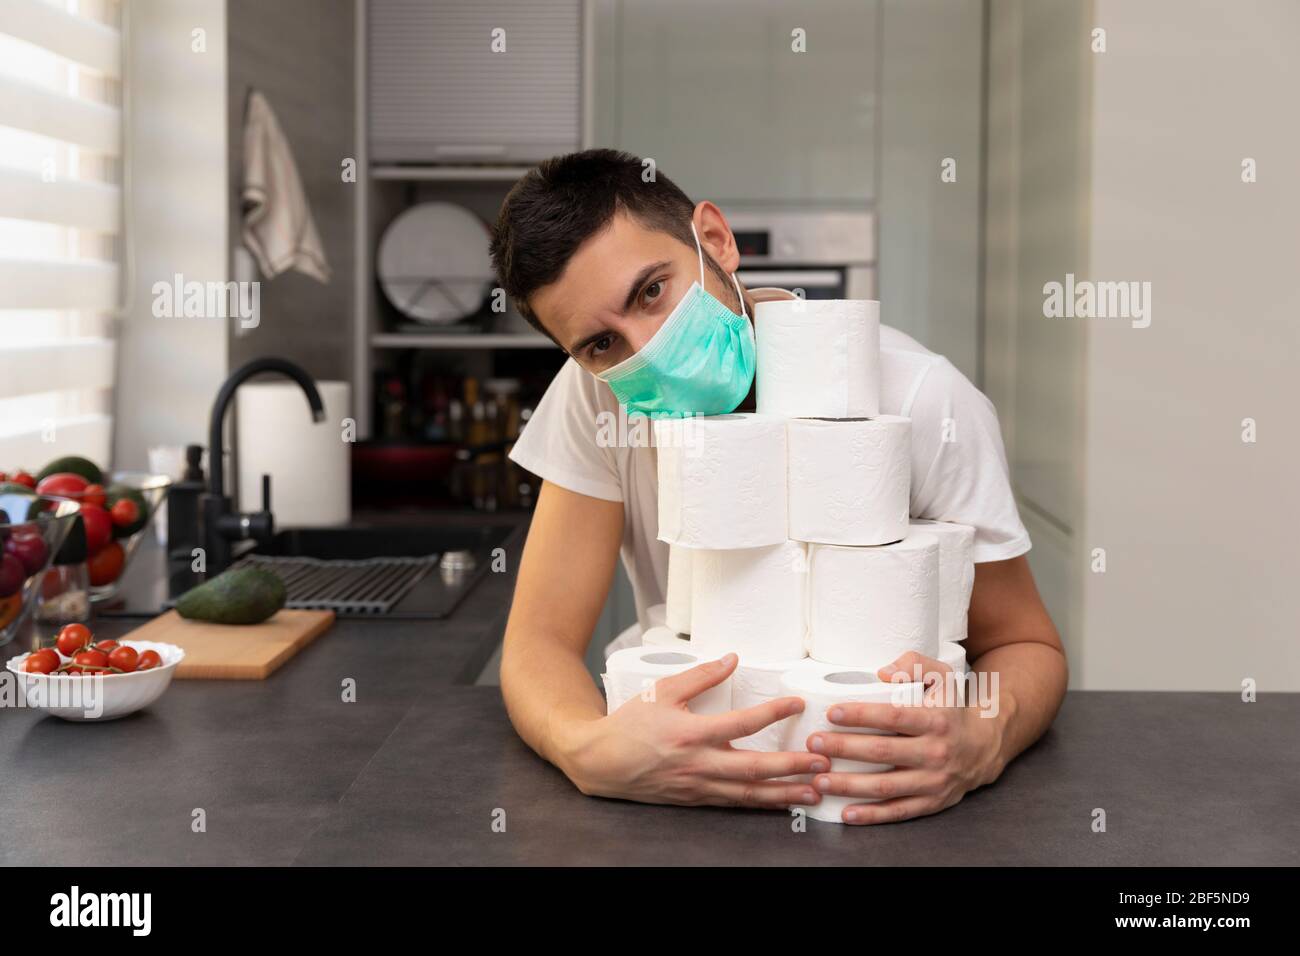 Un uomo gioisce sulla carta igienica acquisita a causa del panico e della carenza causati dallo scoppio del virus covid19. Foto concettuale su Foto Stock